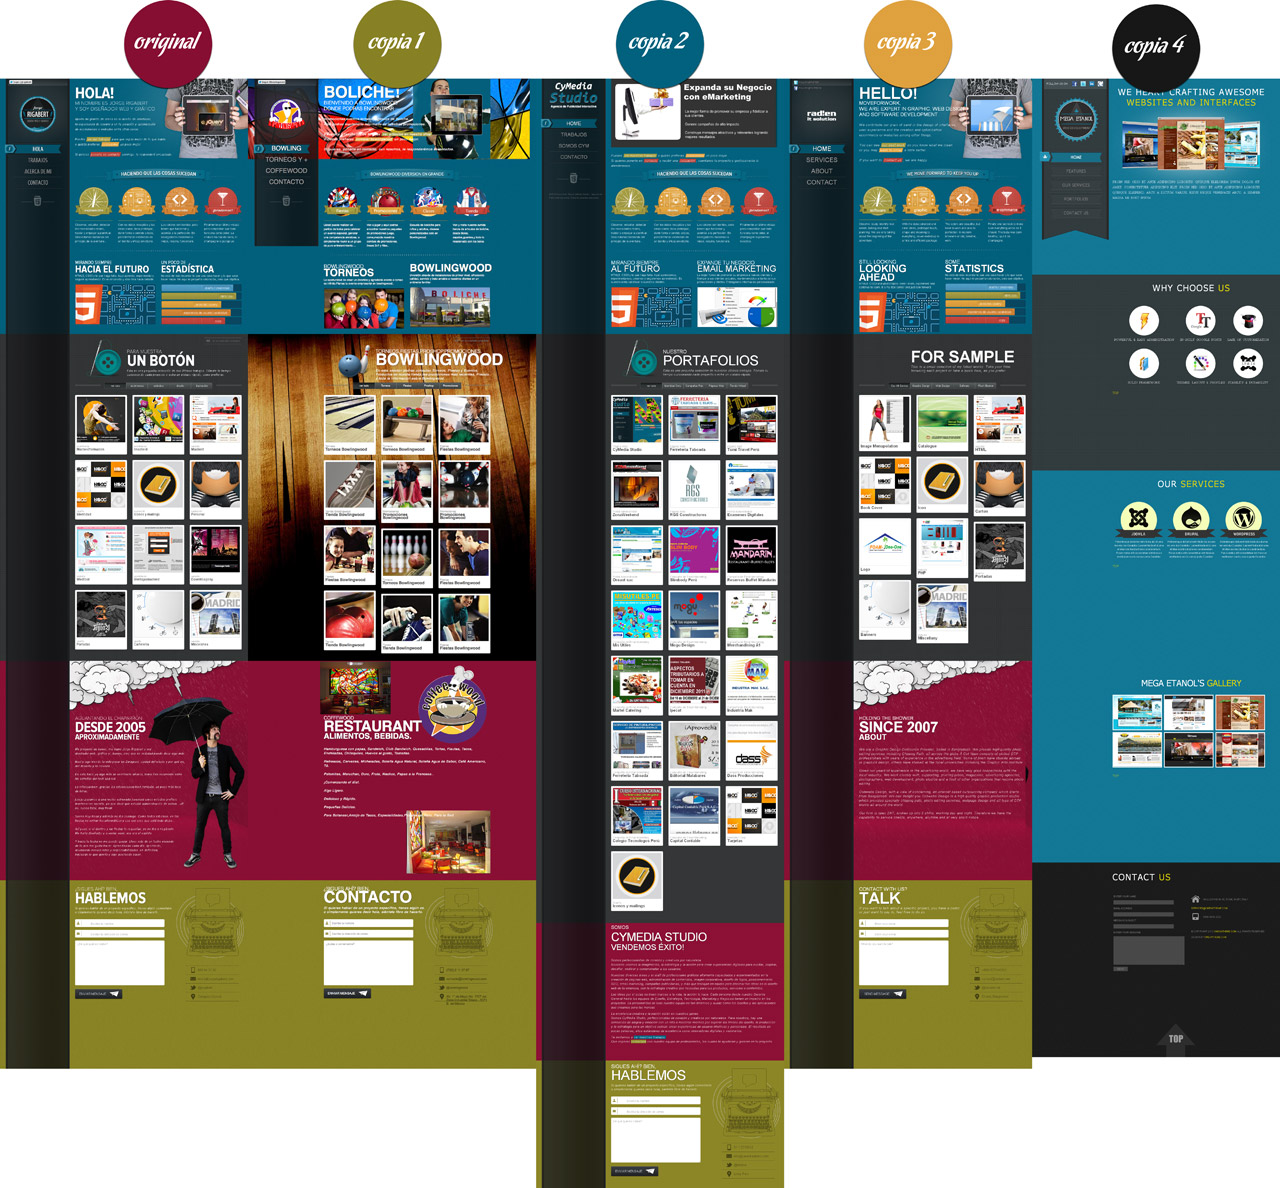 Copias y plagios de un mismo diseño web